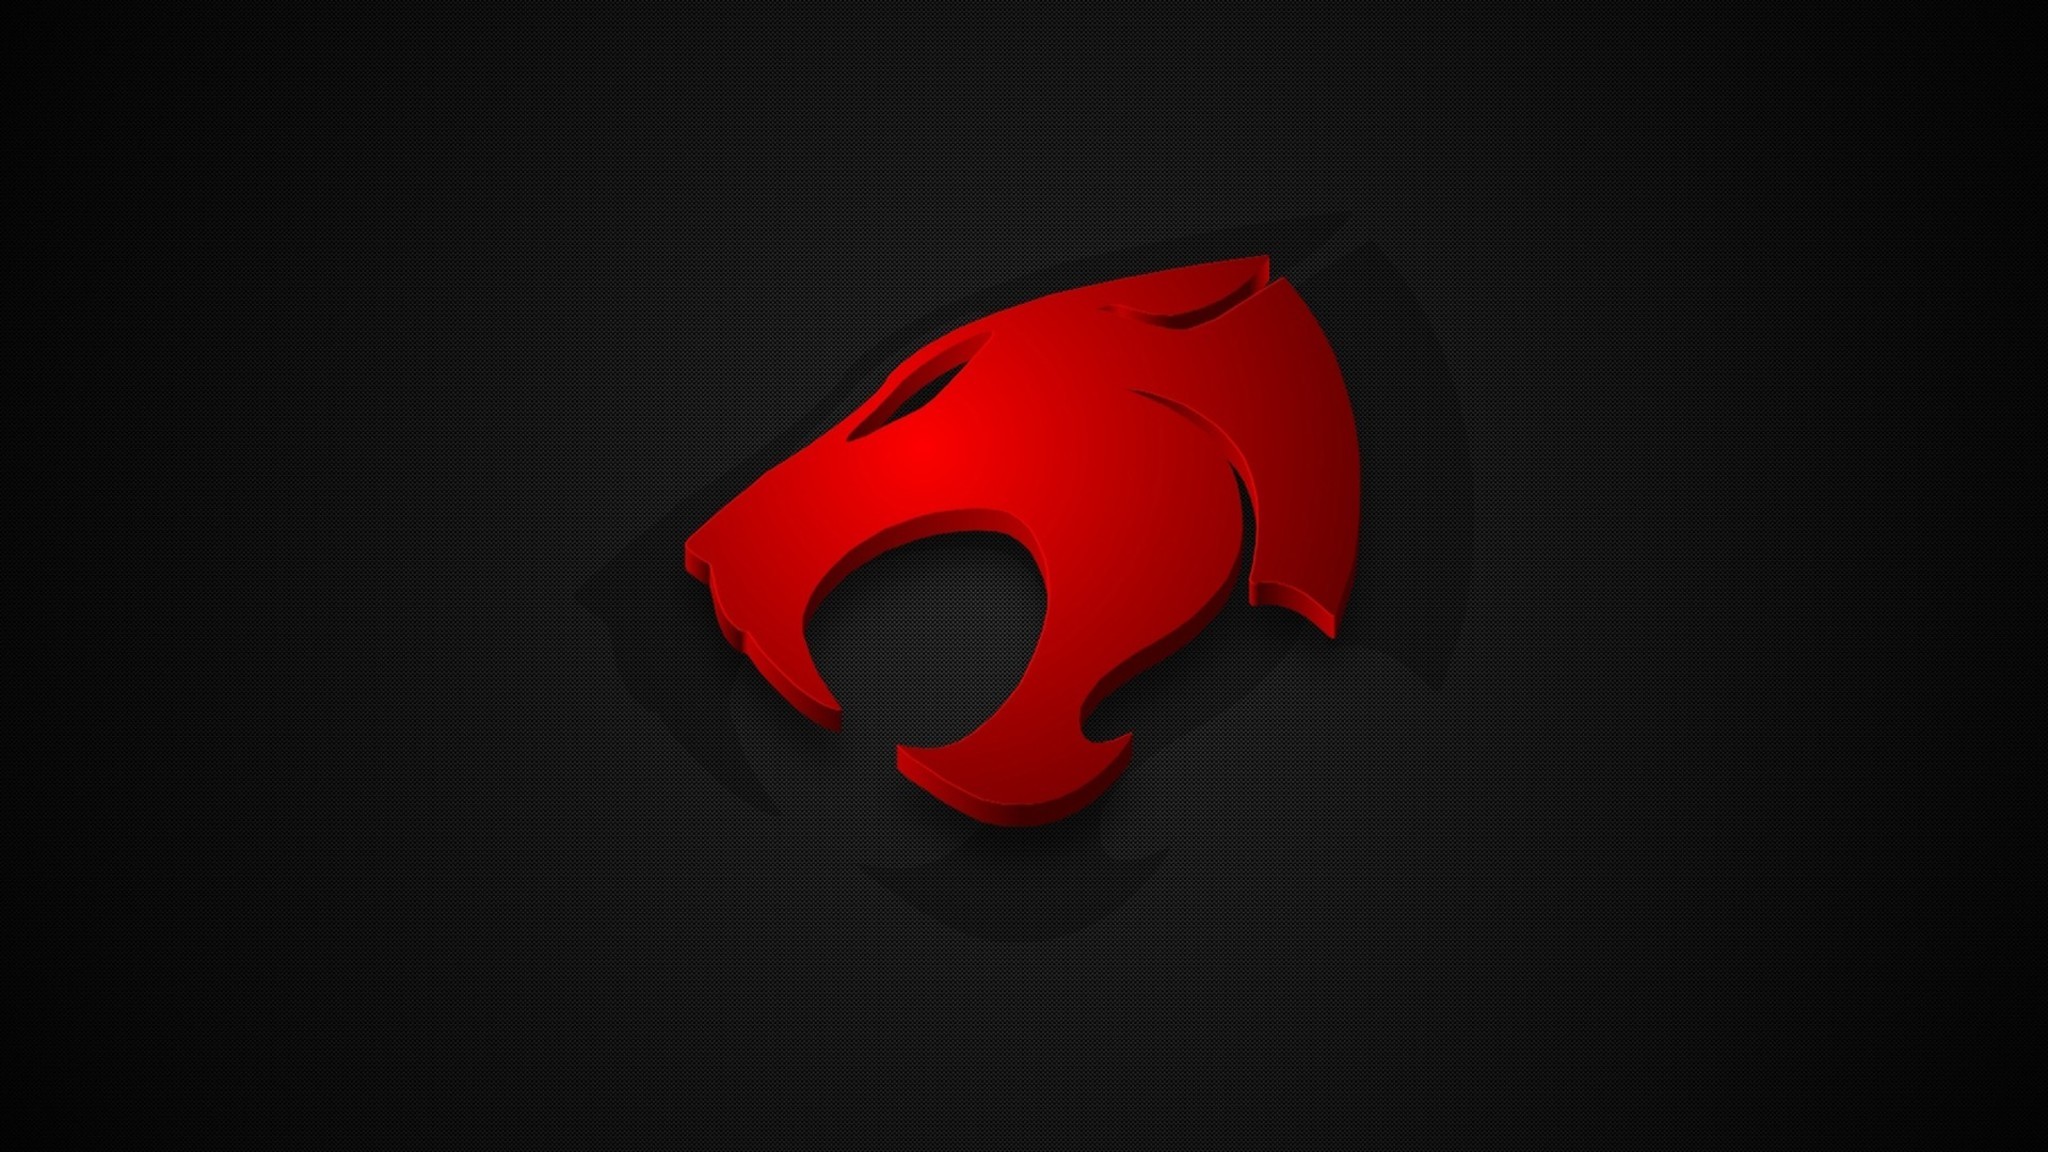 2048x1152 thunder-cats-logo-image.jpg